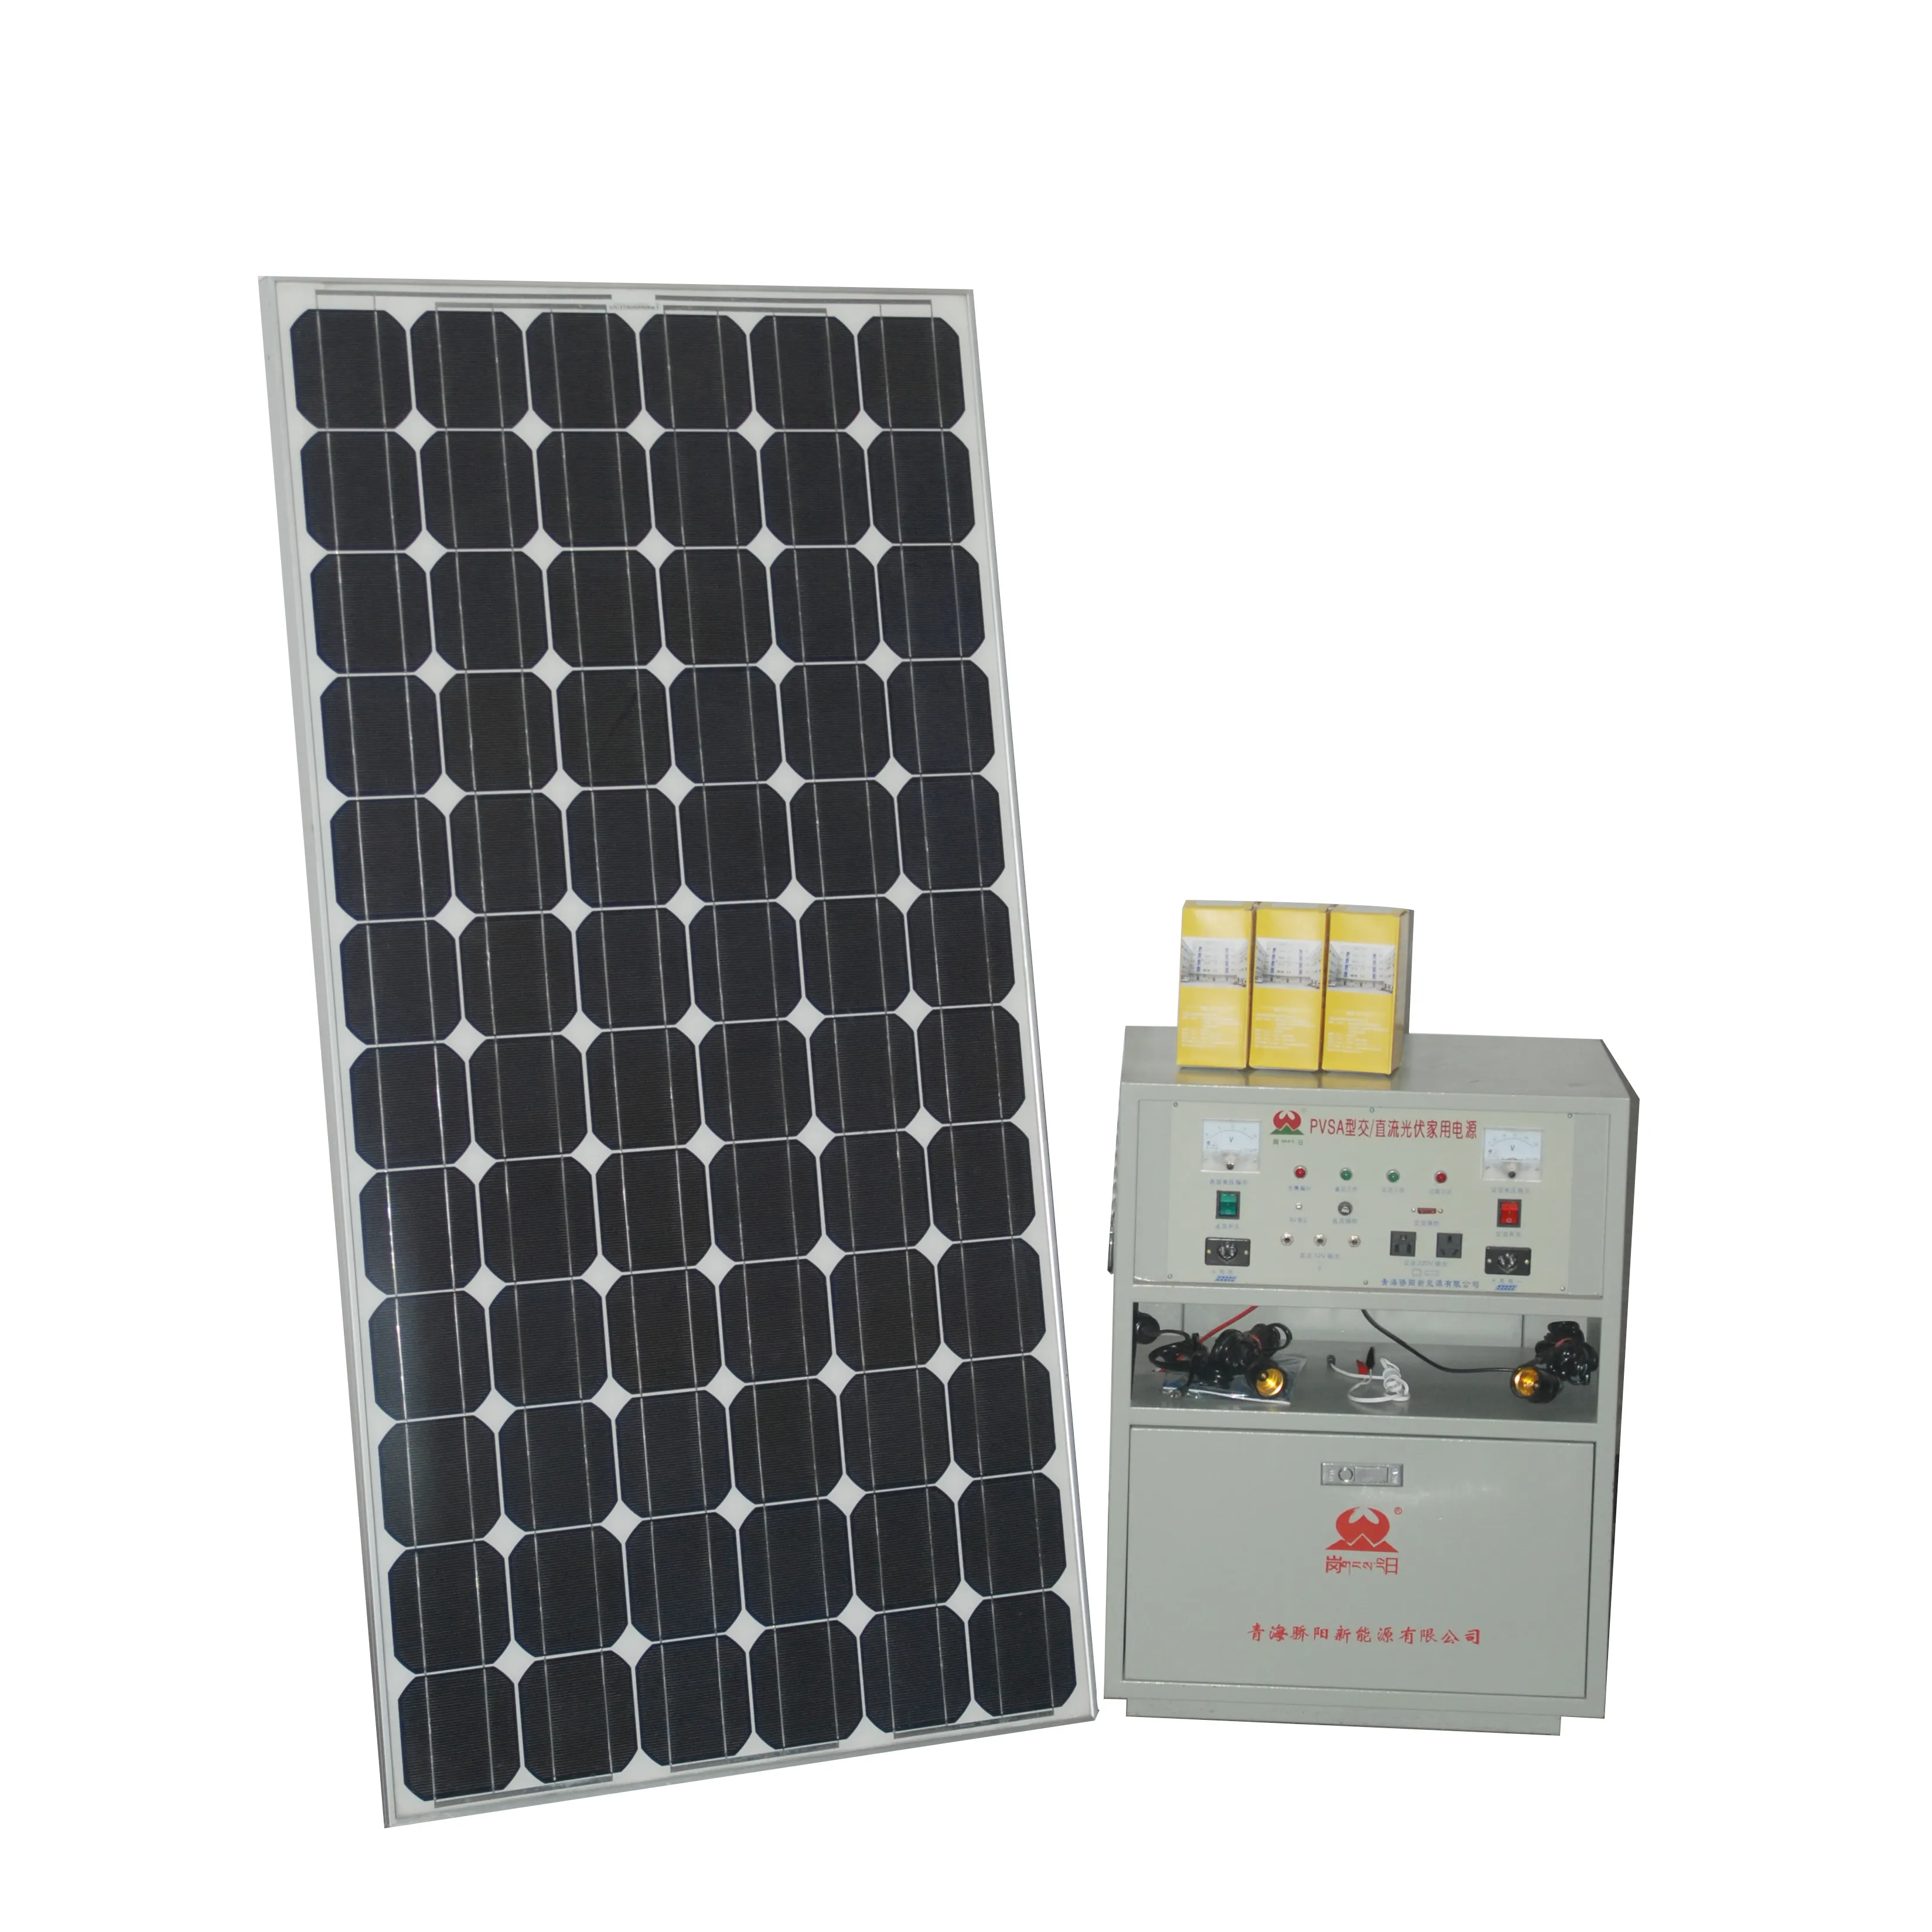 직접 도매 좋은 품질 오프 그리드 옥상 태양 광 발전 시스템 PVSA12200-200MT 오프 그리드 태양 광 발전 시스템